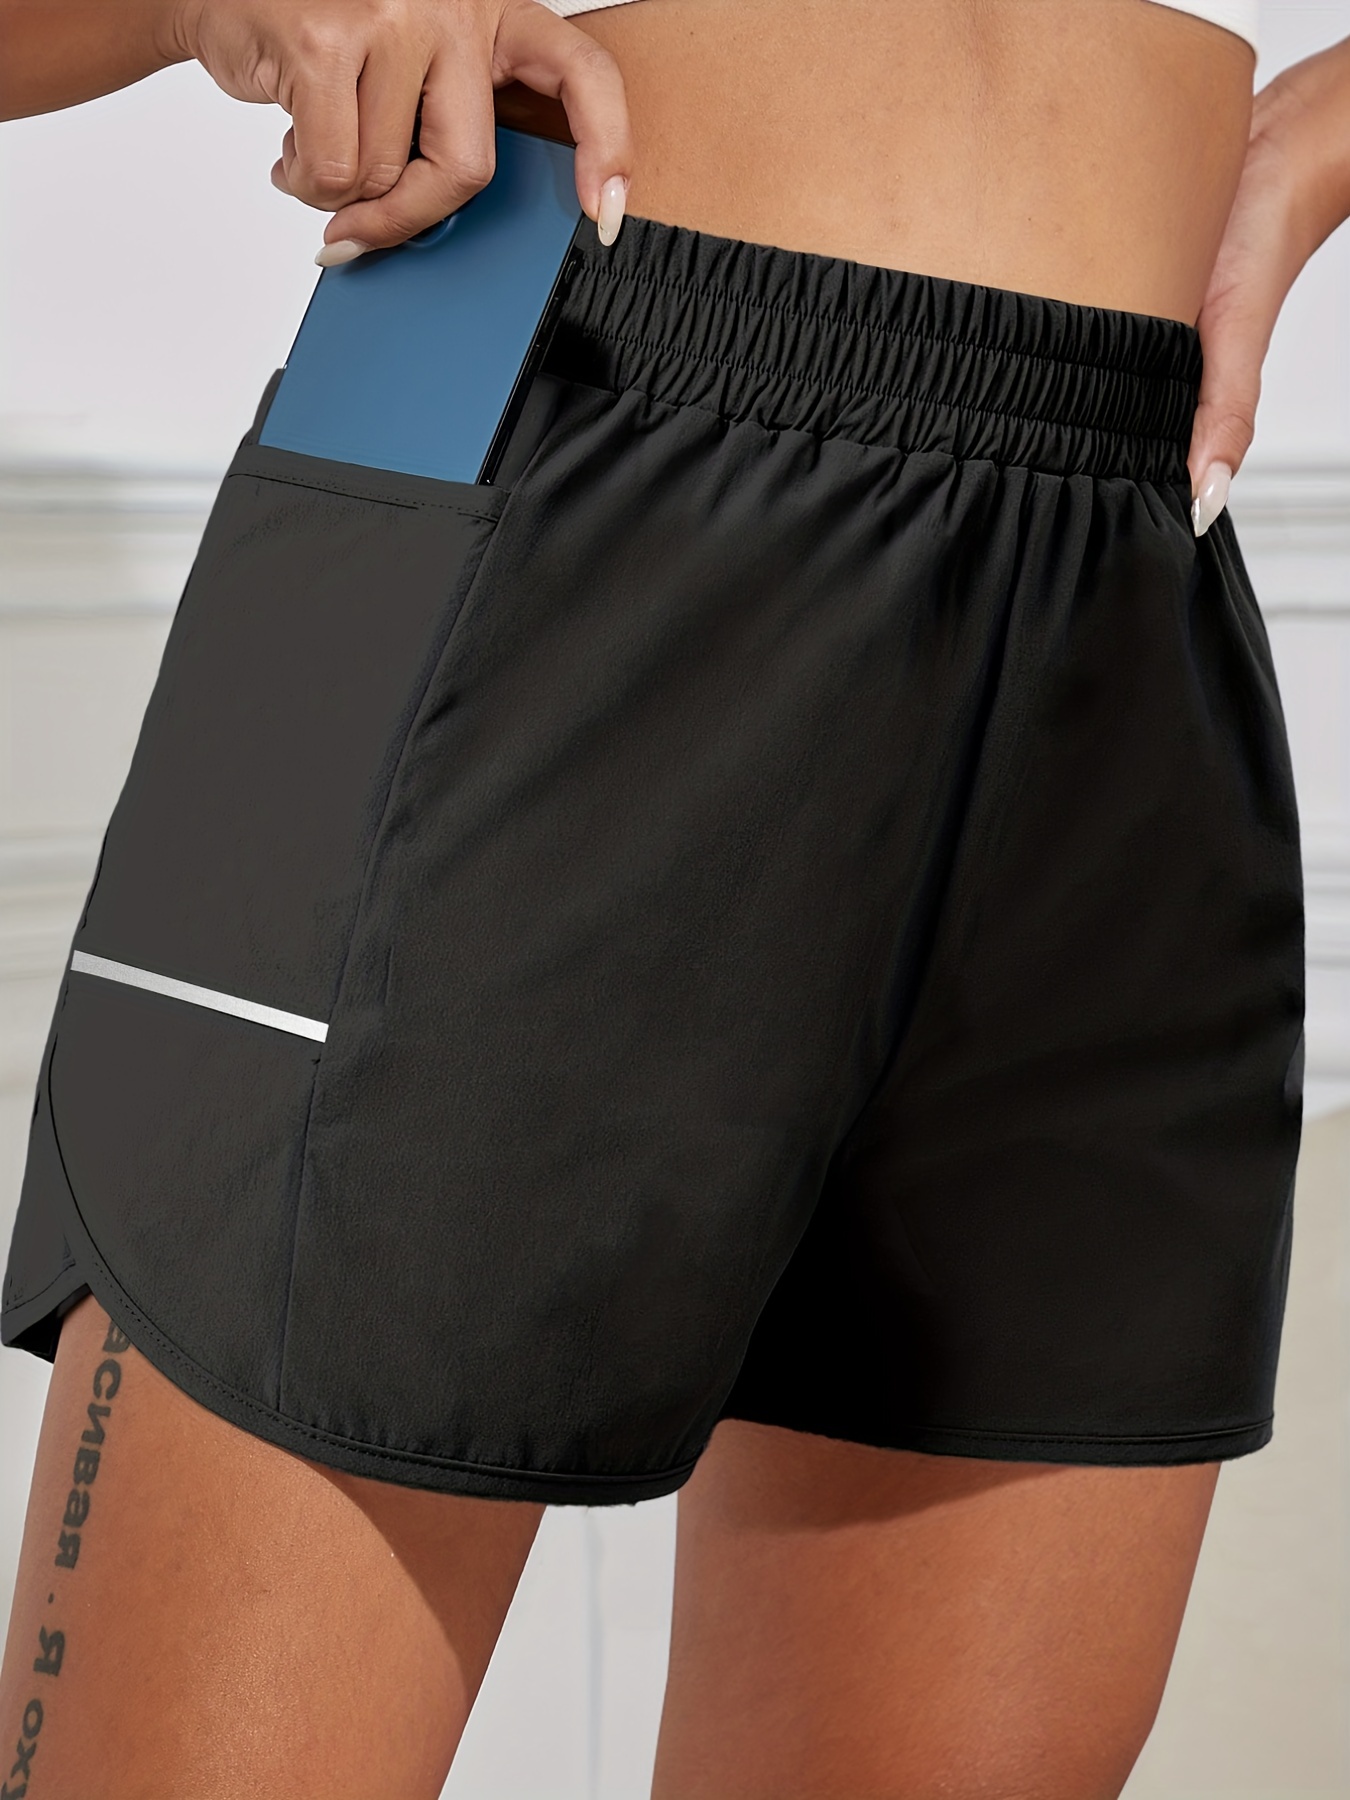 Pantalones cortos deportivos para mujer con bolsillos Pantalones